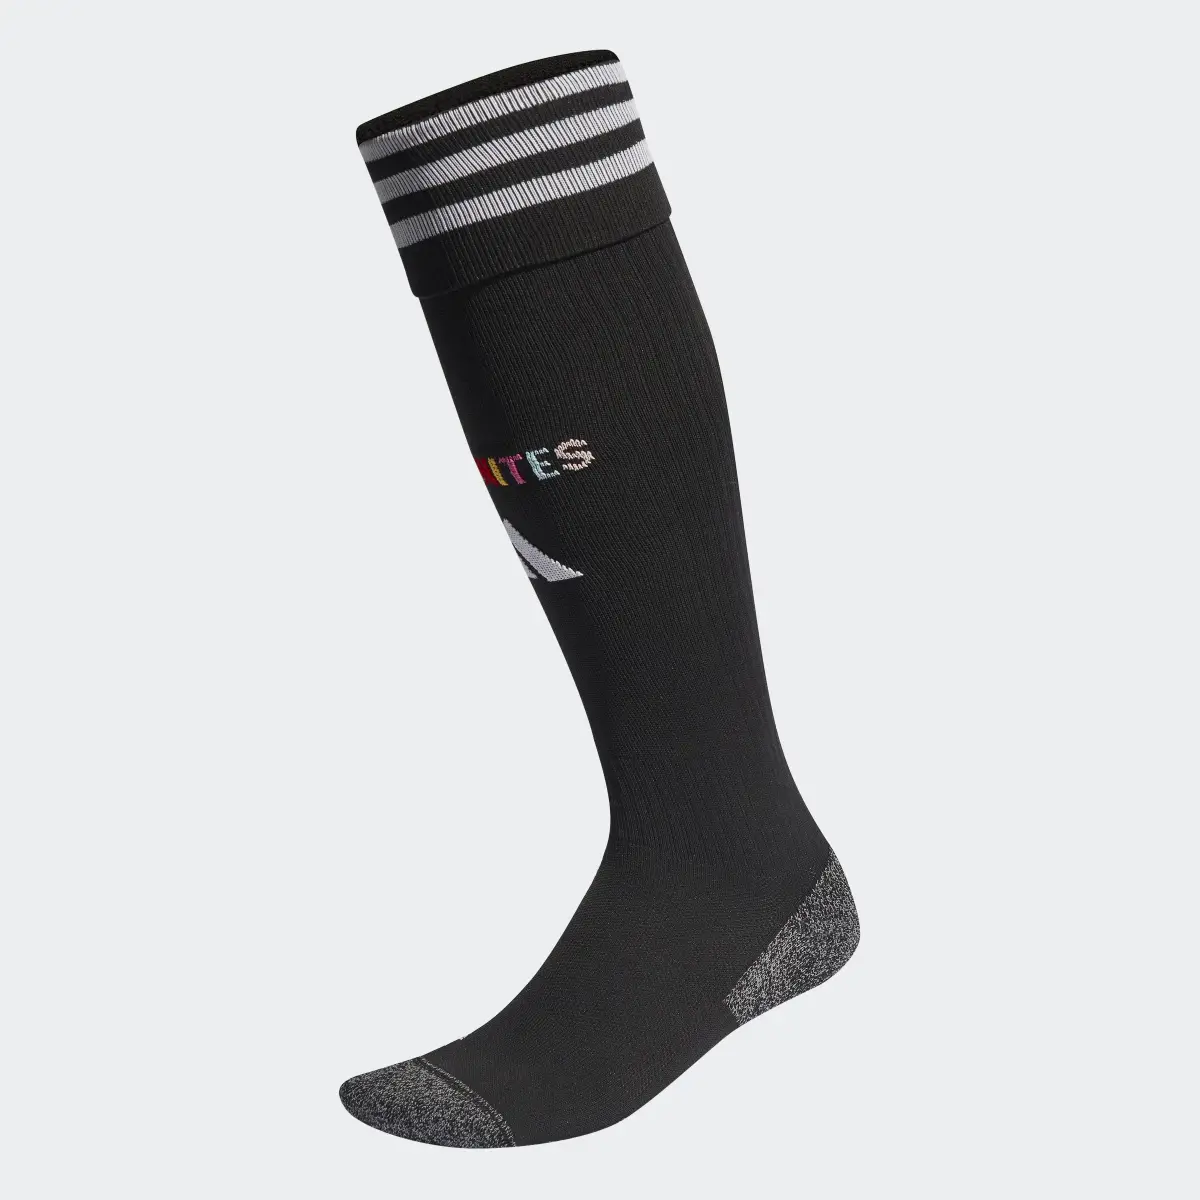 Adidas Pride Socks. 1